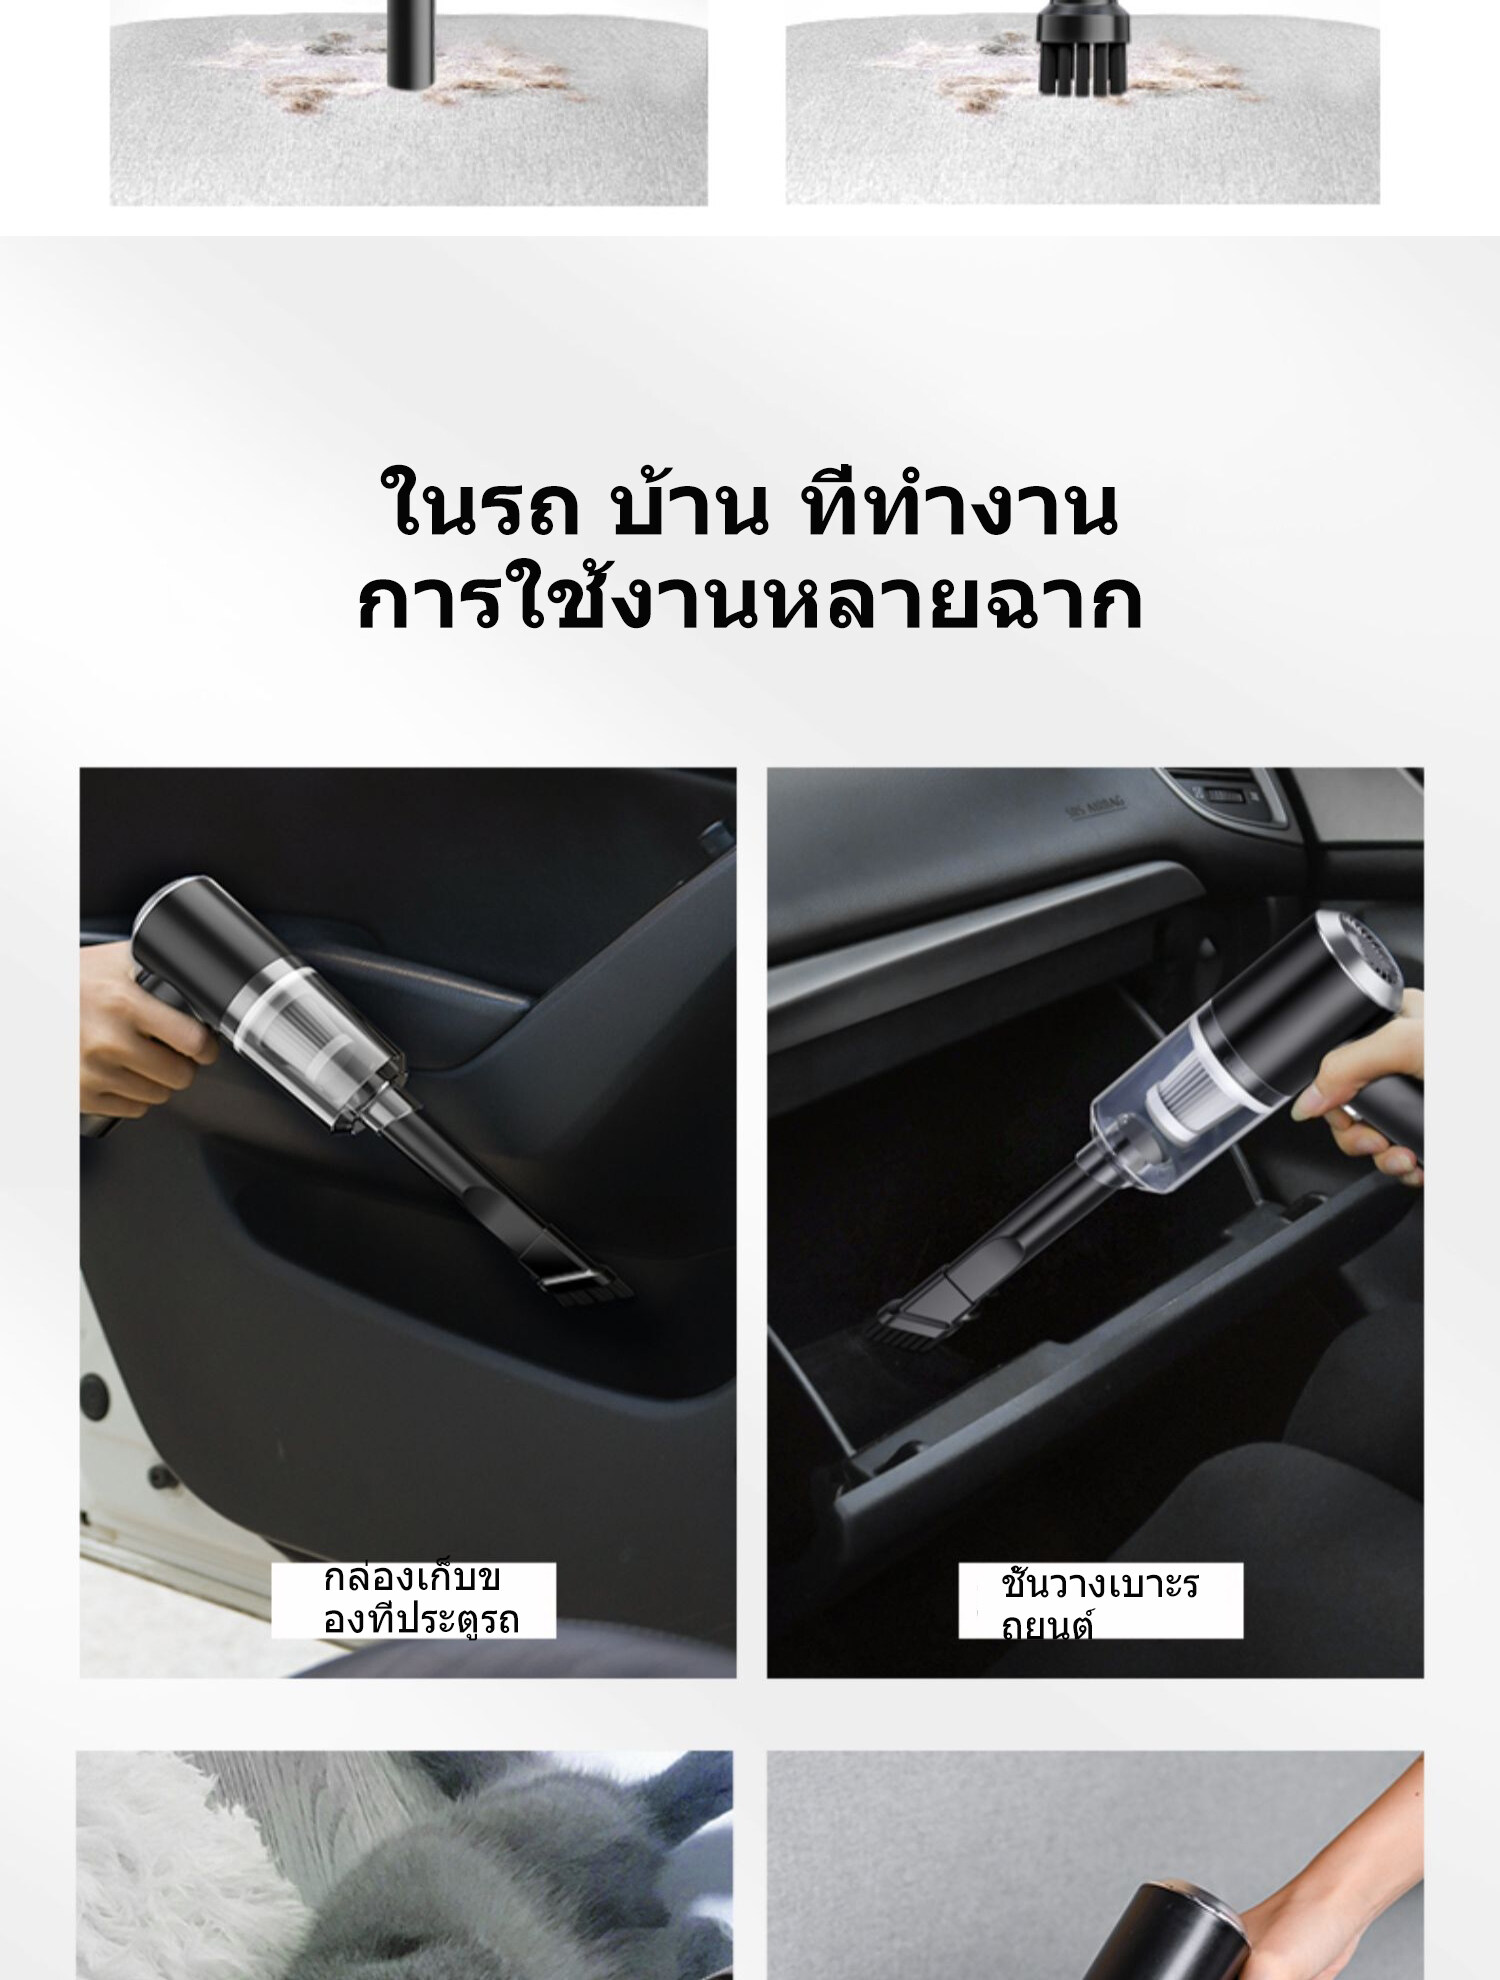 ภาพอธิบายเพิ่มเติมของ KHDE 6000Pa เครื่องดูดฝุ่น ไร้สาย การดูดแรง เครื่องดูดในรถ เครื่องดูดฝุ่นในรถ เครื่องดูดไรฝุ่น Coreless Car Vacuum Cleaner